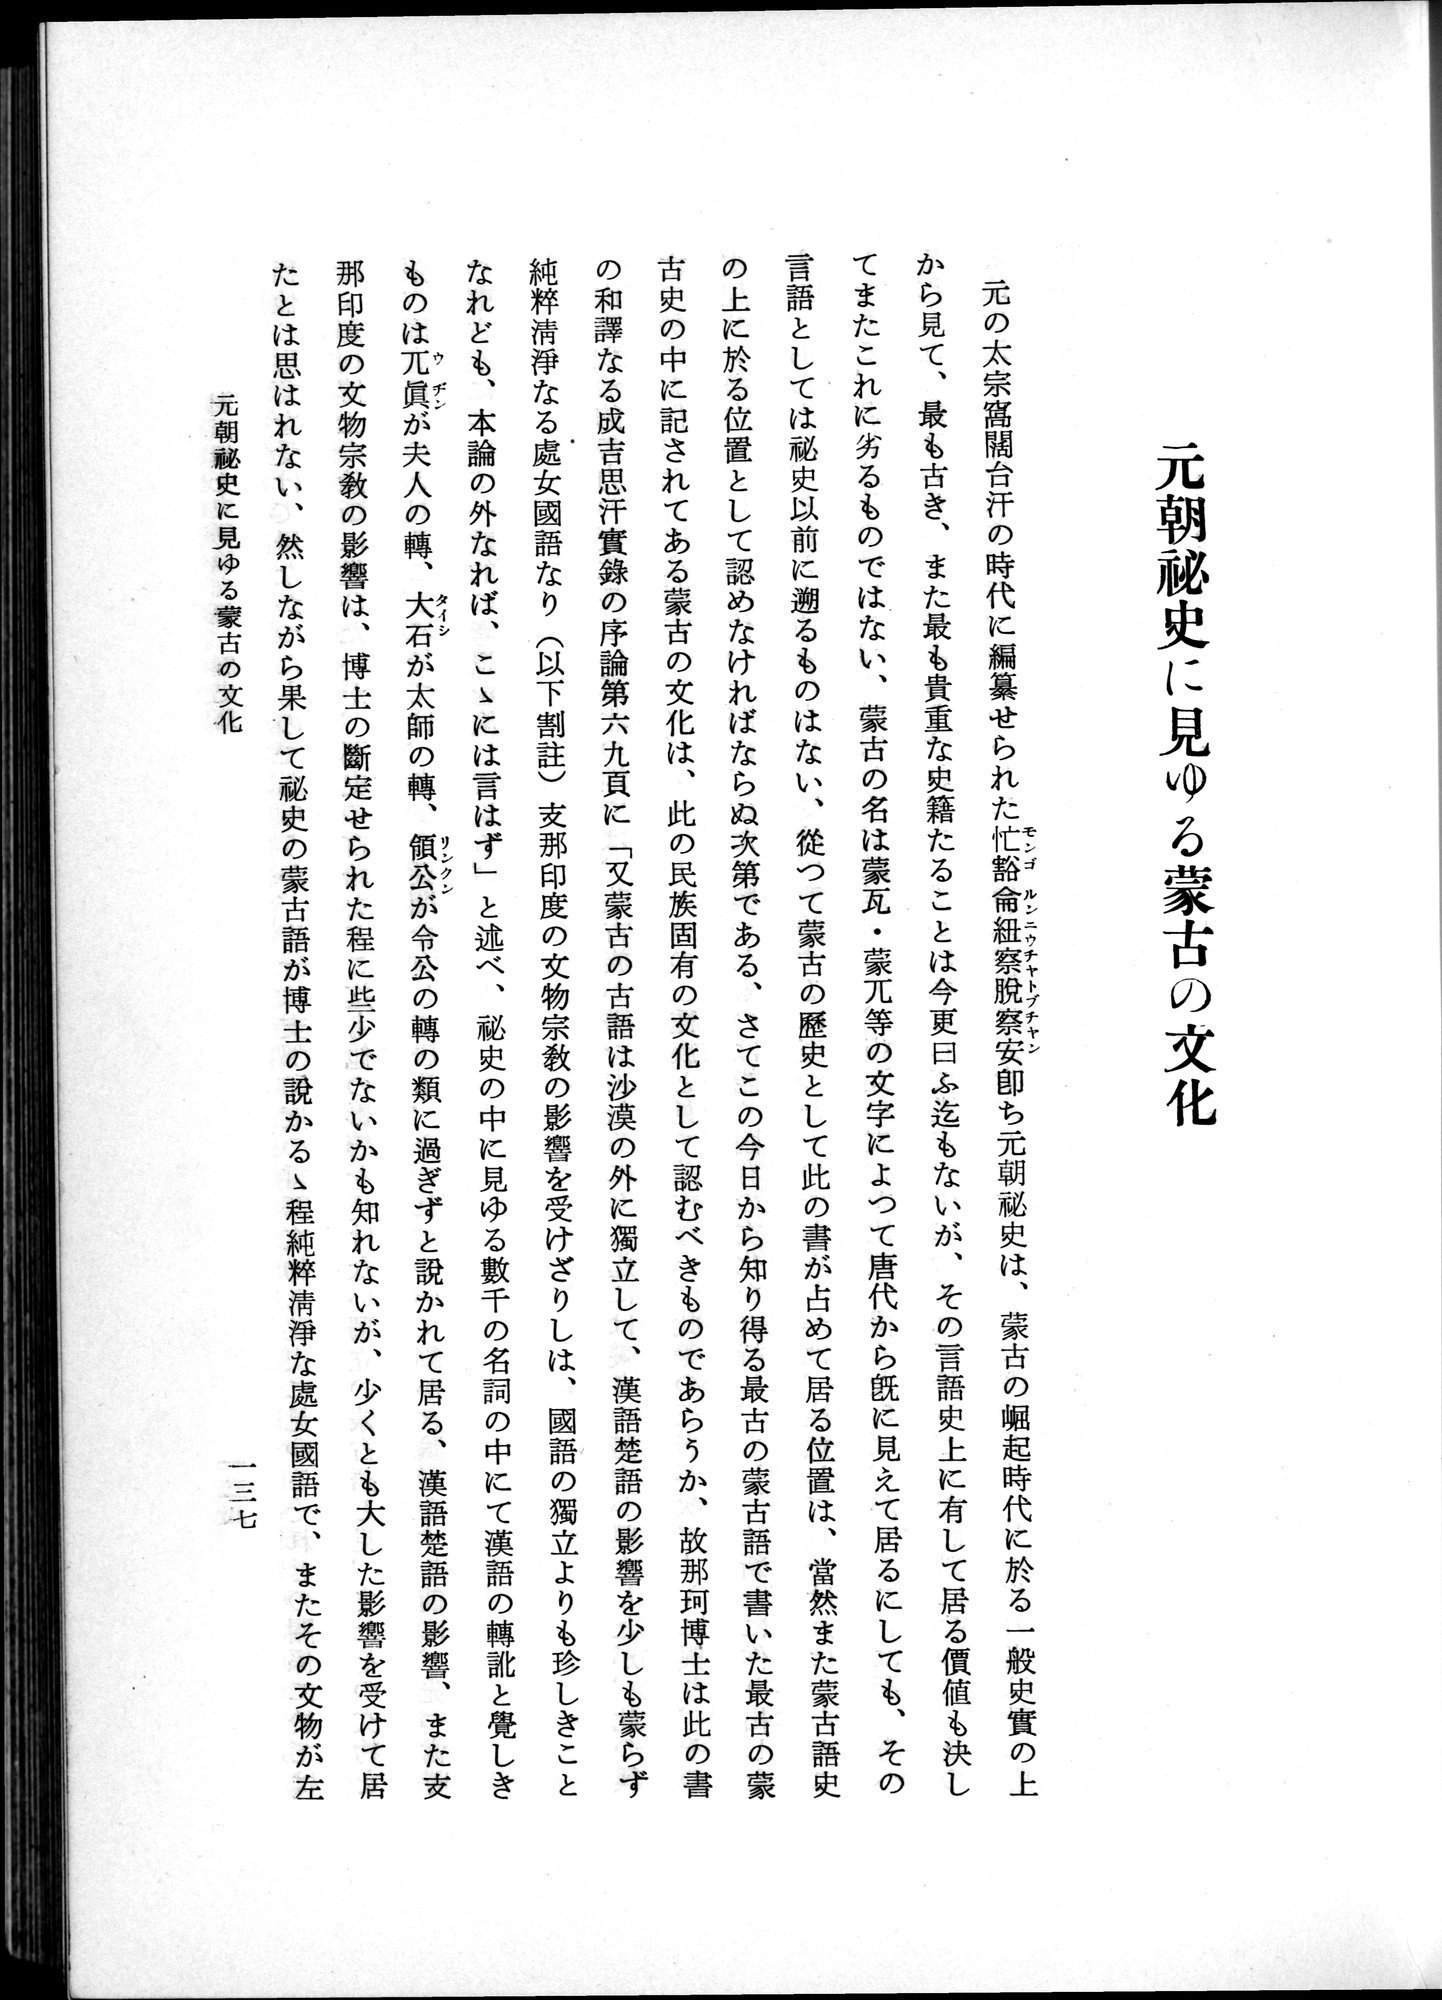 羽田博士史学論文集 : vol.1 / Page 175 (Grayscale High Resolution Image)